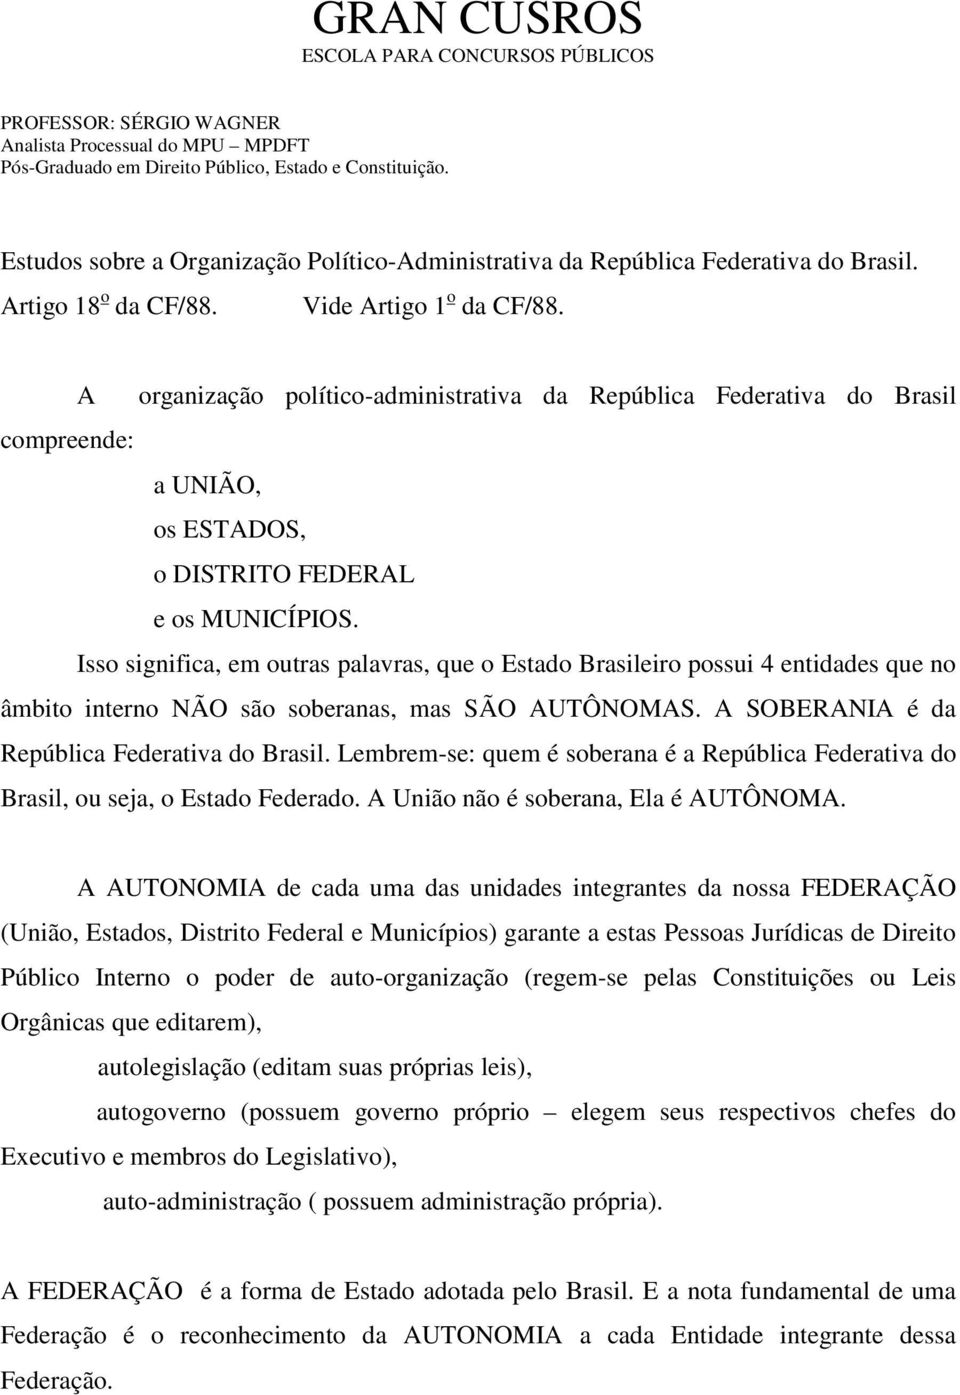 A organização político-administrativa da República Federativa do Brasil compreende: a UNIÃO, os ESTADOS, o DISTRITO FEDERAL e os MUNICÍPIOS.